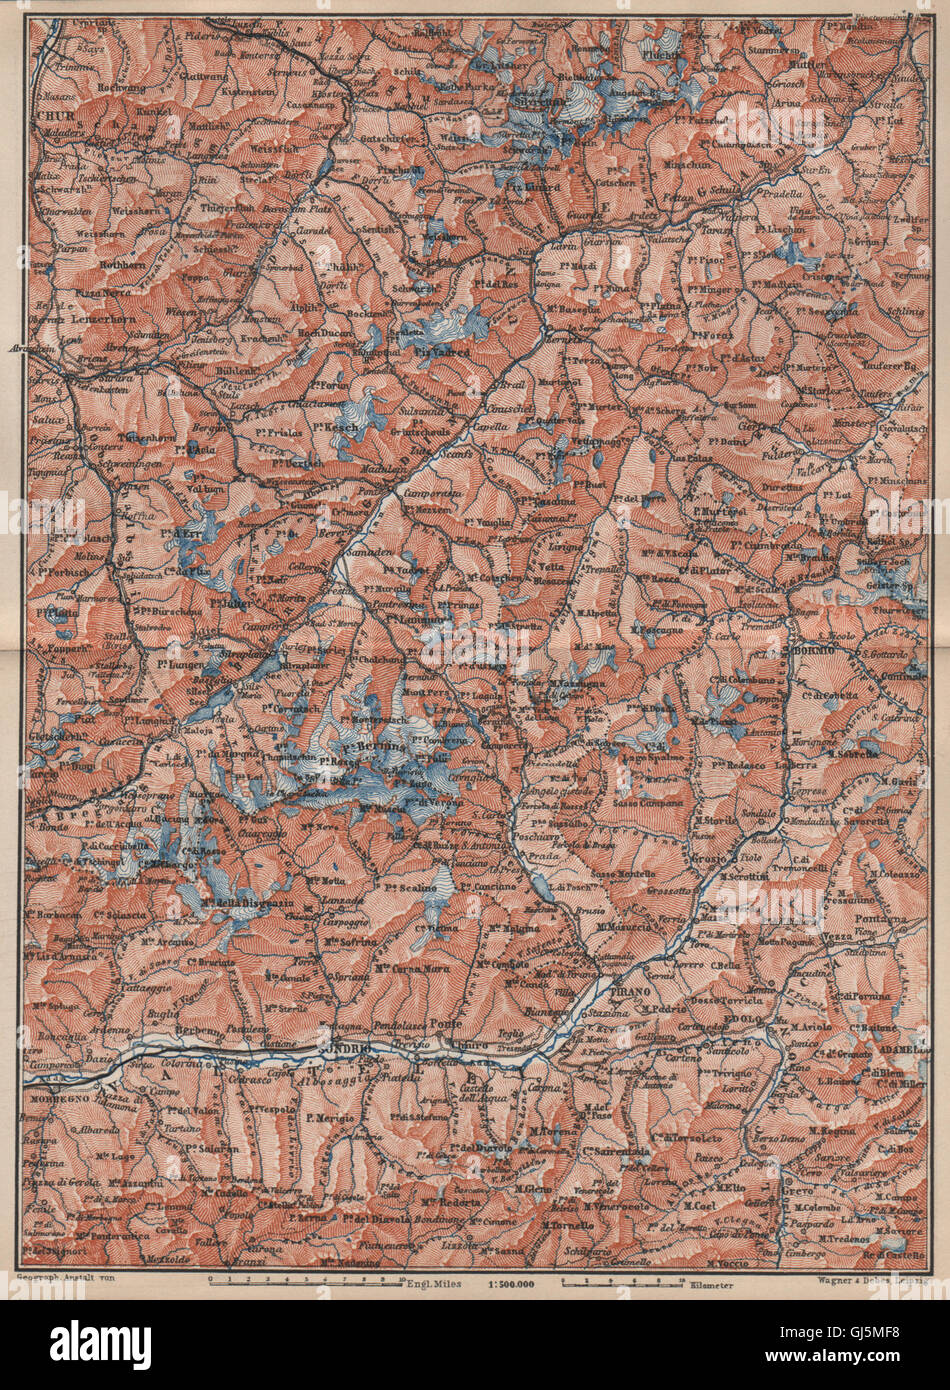 ENGADINE/VAL TELLINA. Davos Arosa Sils Bormio Livigno Sondrio Chur, 1889 map Stock Photo